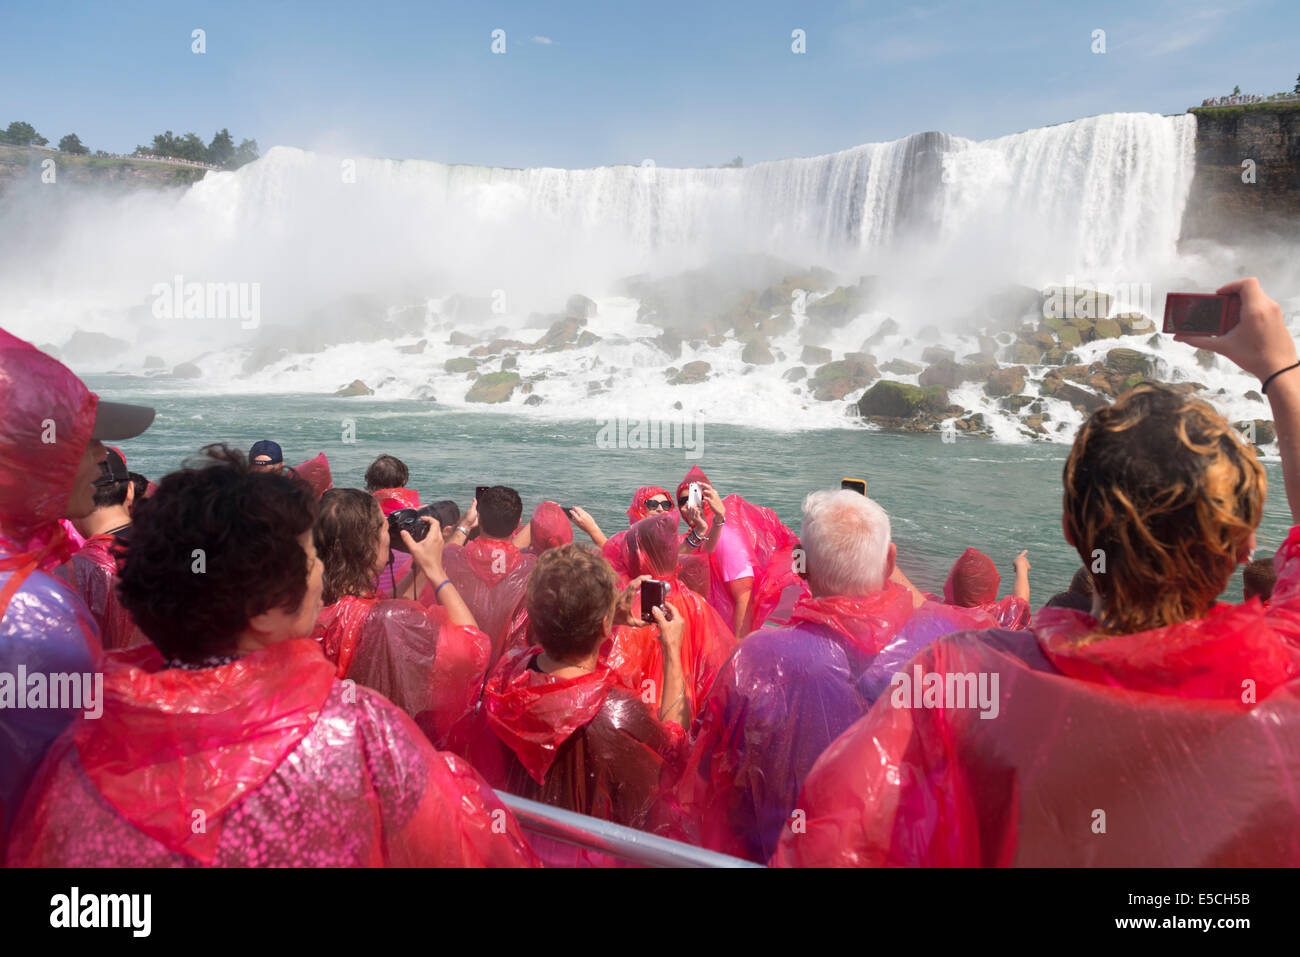 Les gens en rose d'imperméables sur un bateau aux chutes du Niagara. Hornblower Cruises Niagara, Ontario, Canada 2014. Banque D'Images